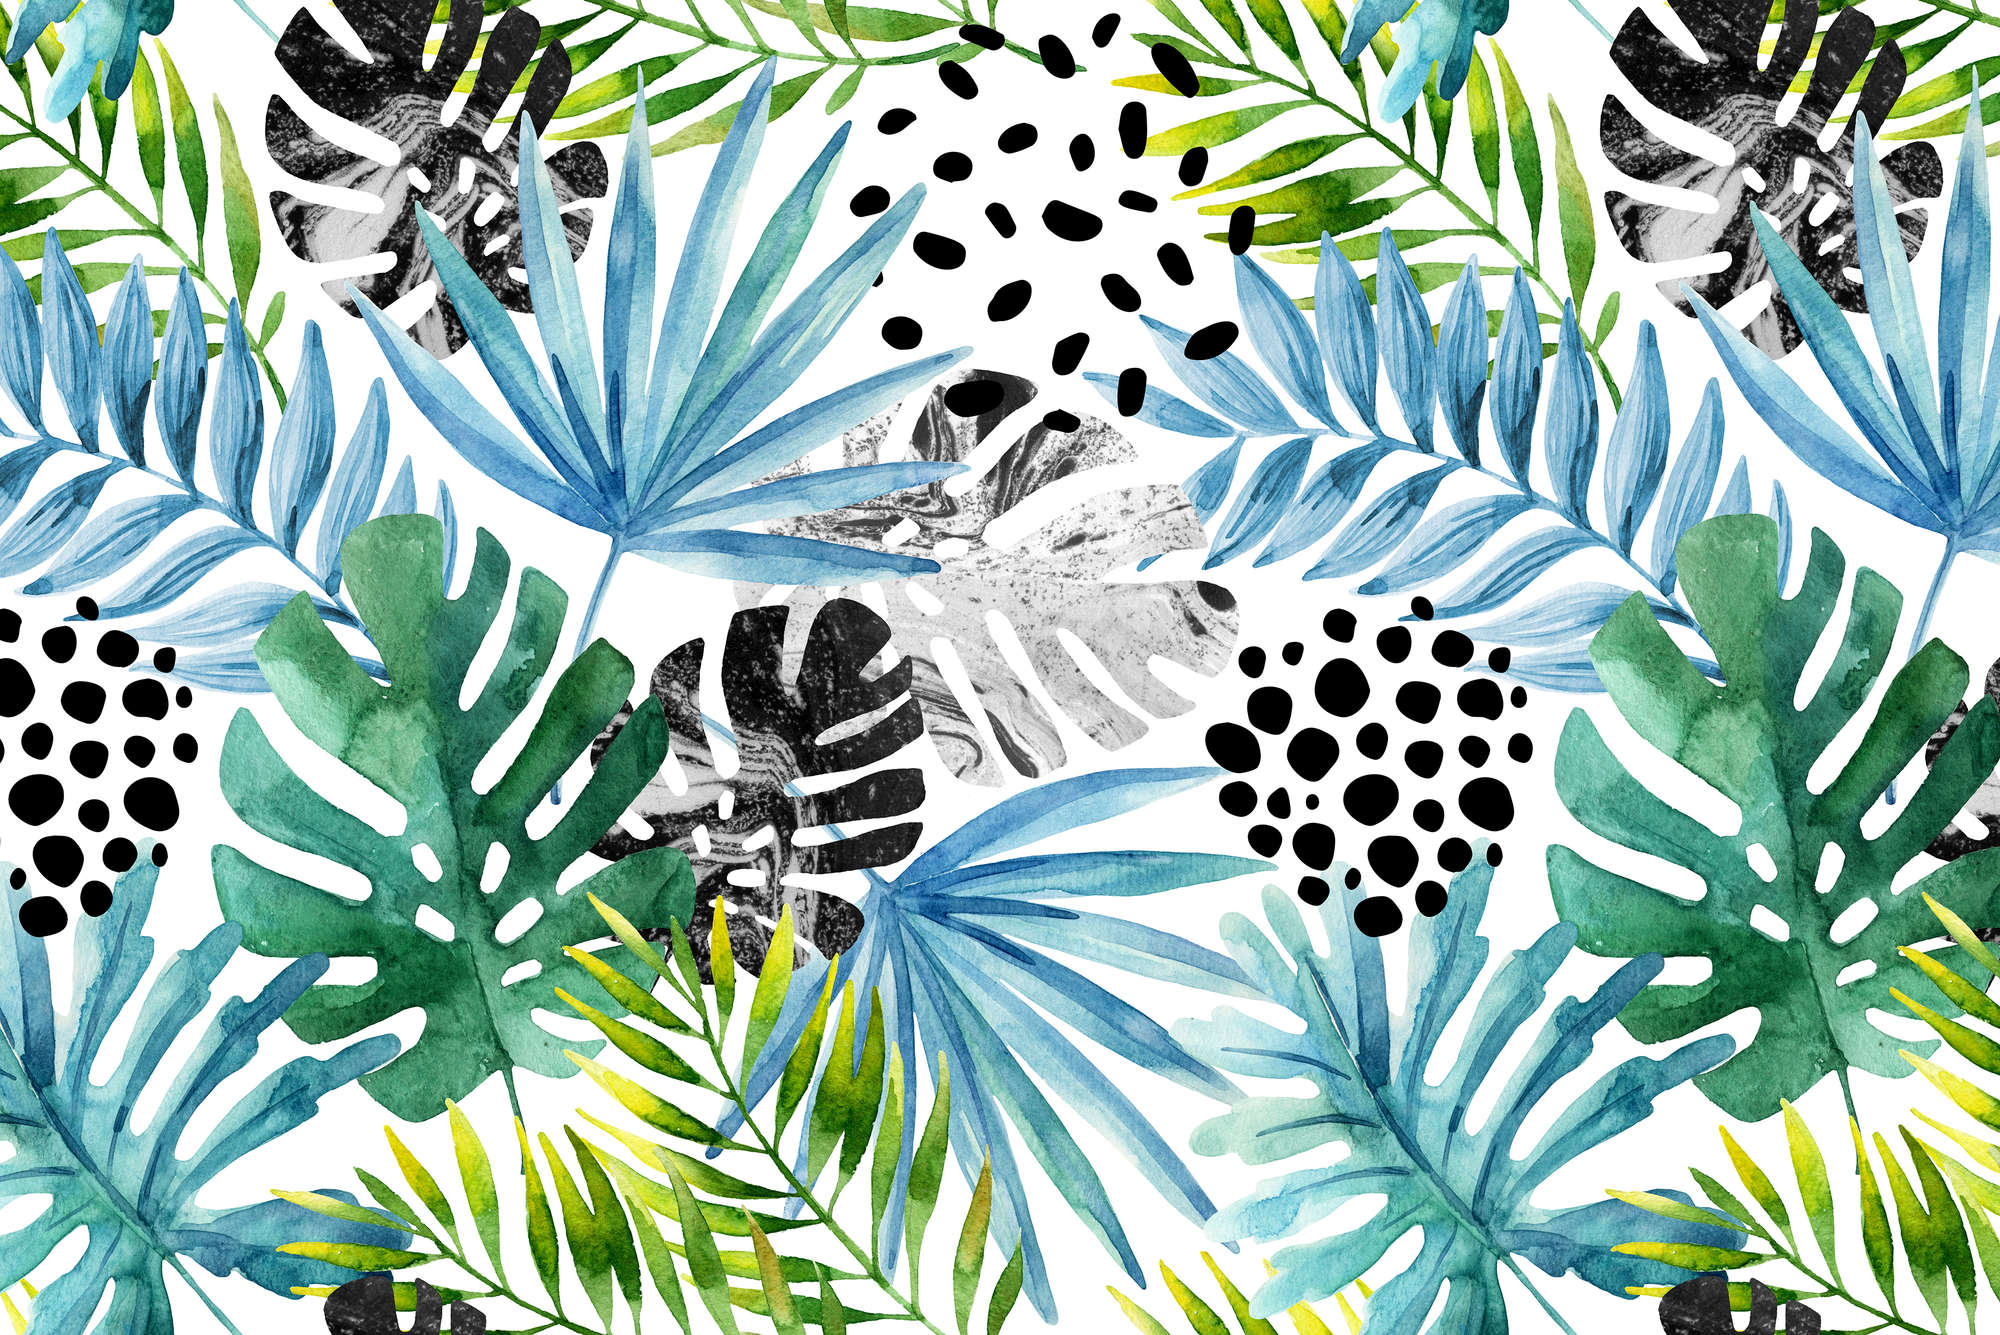             Papel pintado gráfico de plantas de la selva de colores en tejido no tejido texturizado
        